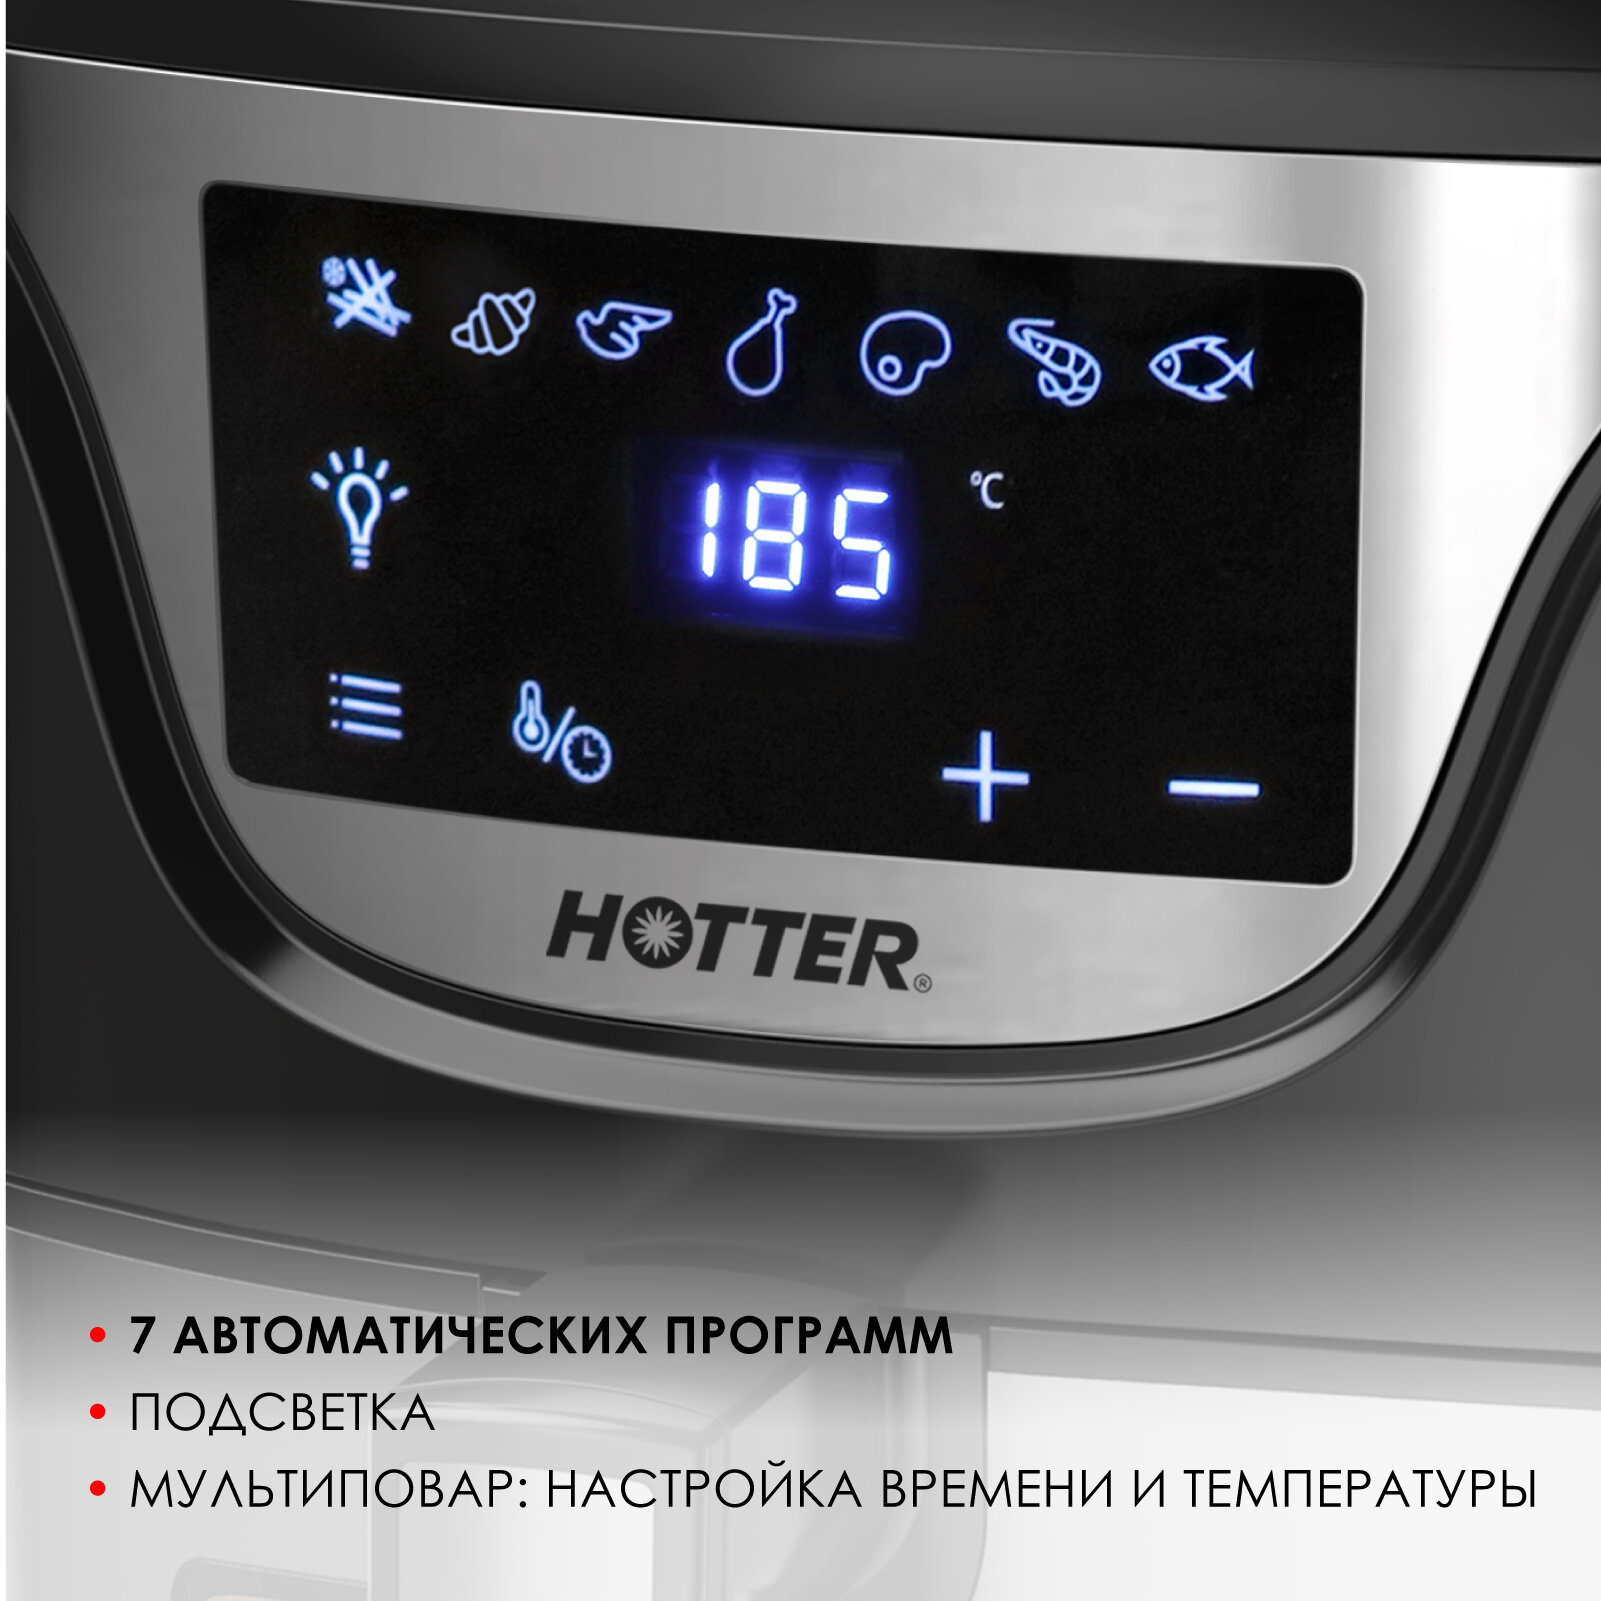 Аэрогриль HOTTER HX-588 черный/ металлик, 7 автопрограмм и регулировка времени и температуры, обзорное окно, объем 4.5л, 1500Вт